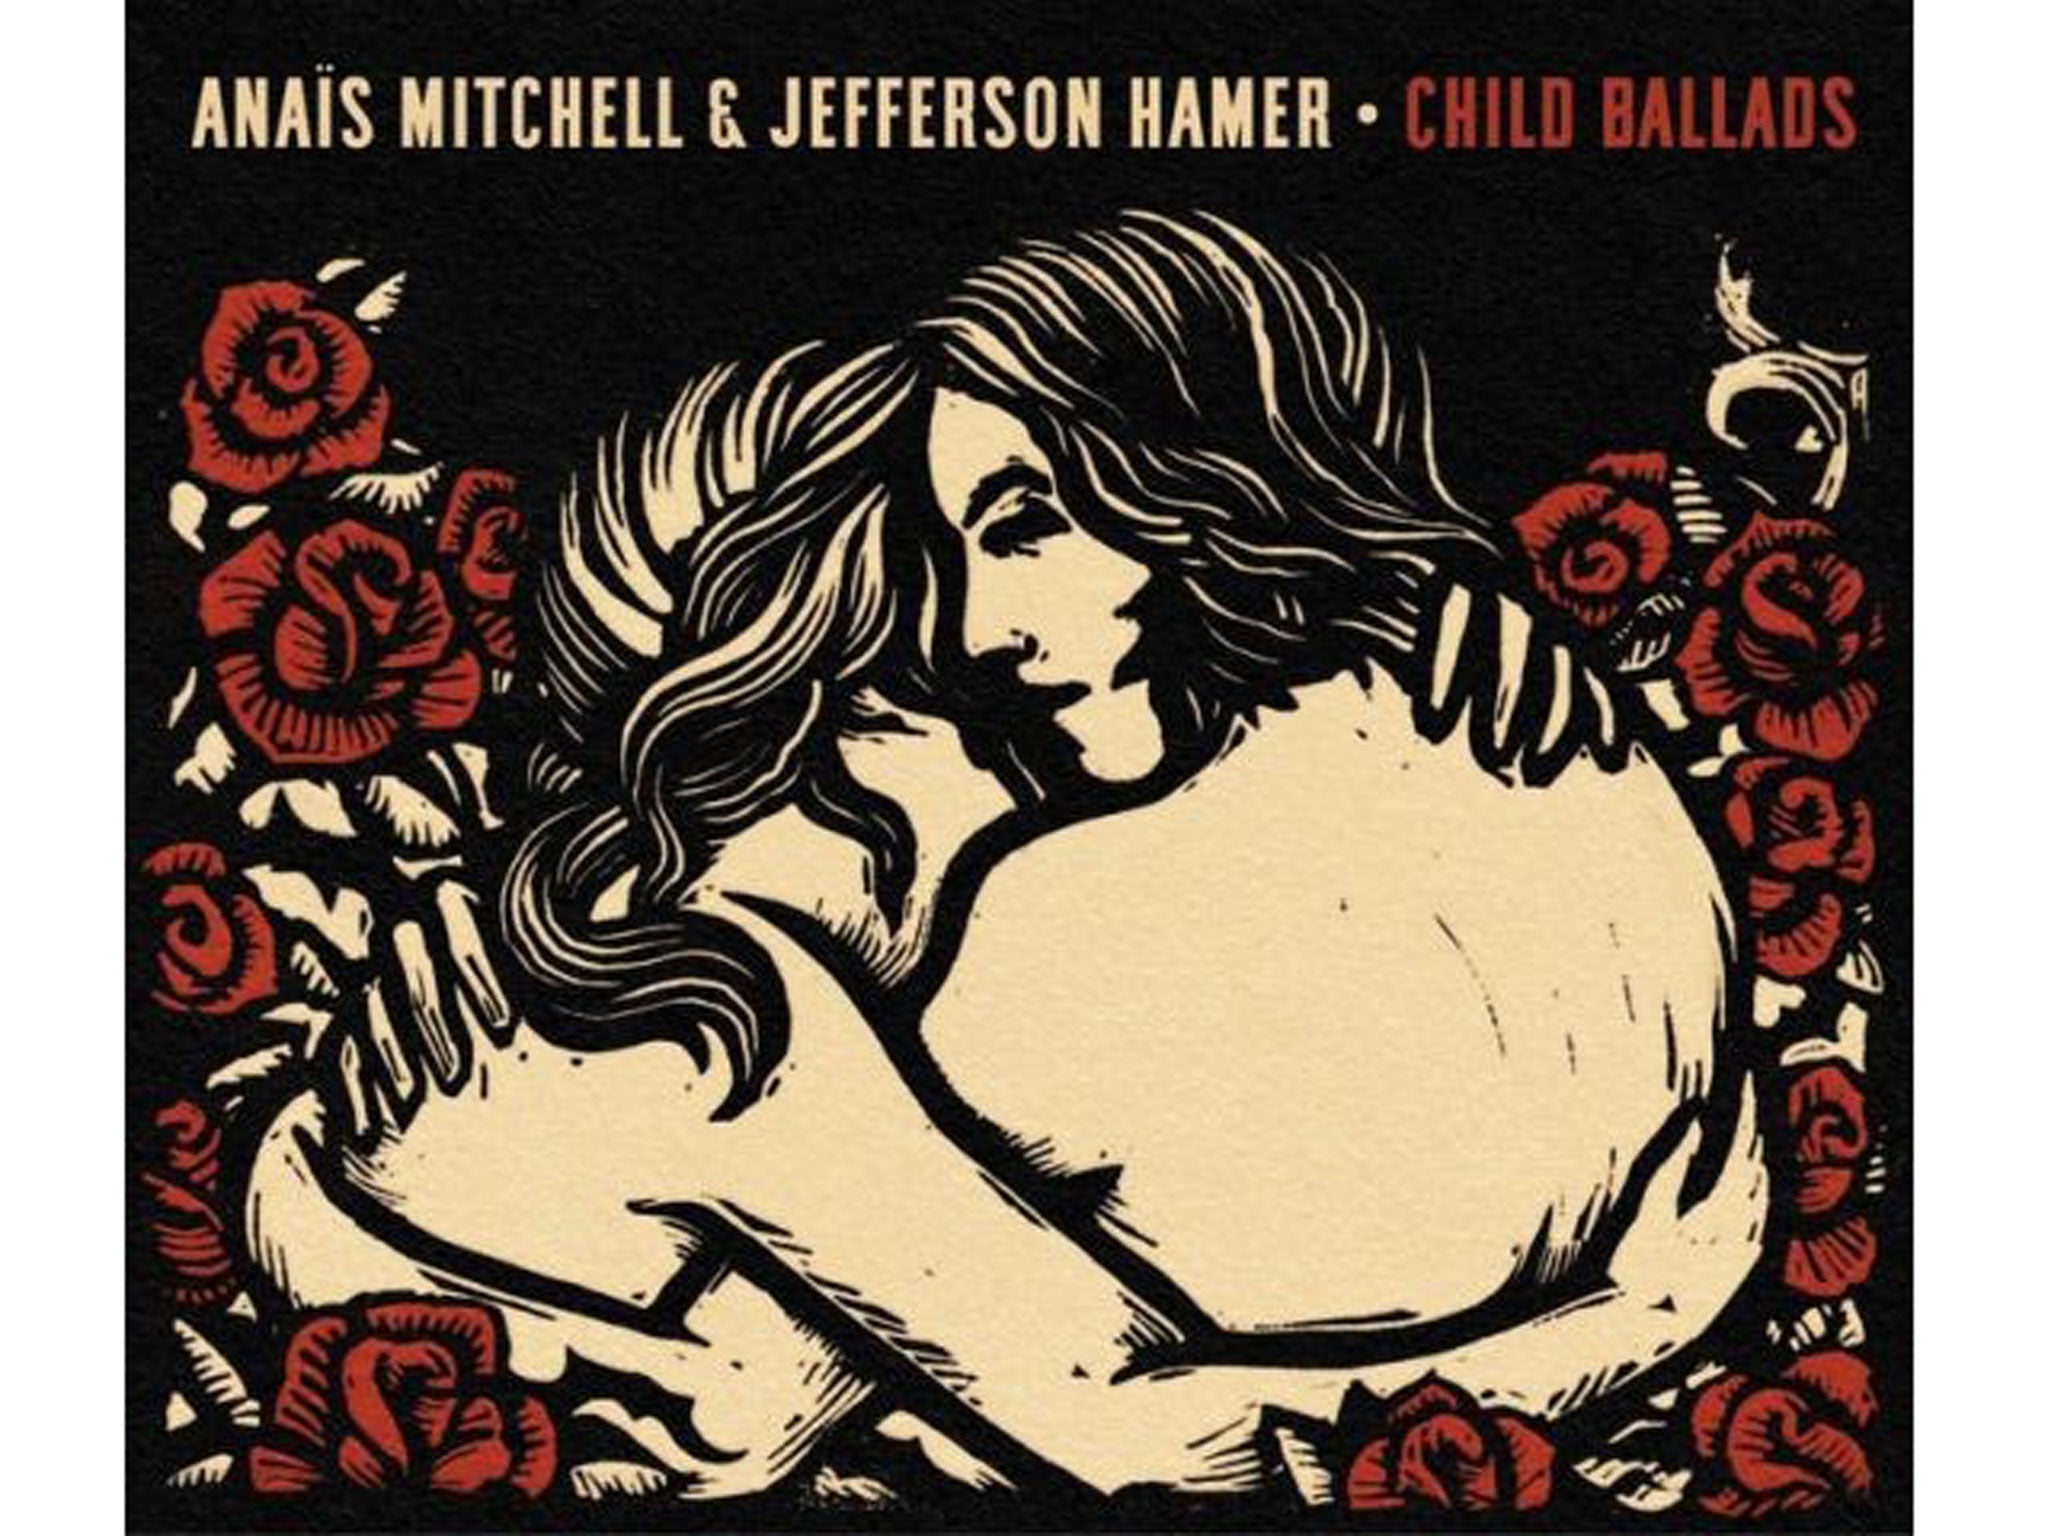 Anaïs Mitchell & Jefferson Hamer, Child Ballads (Wilderland)